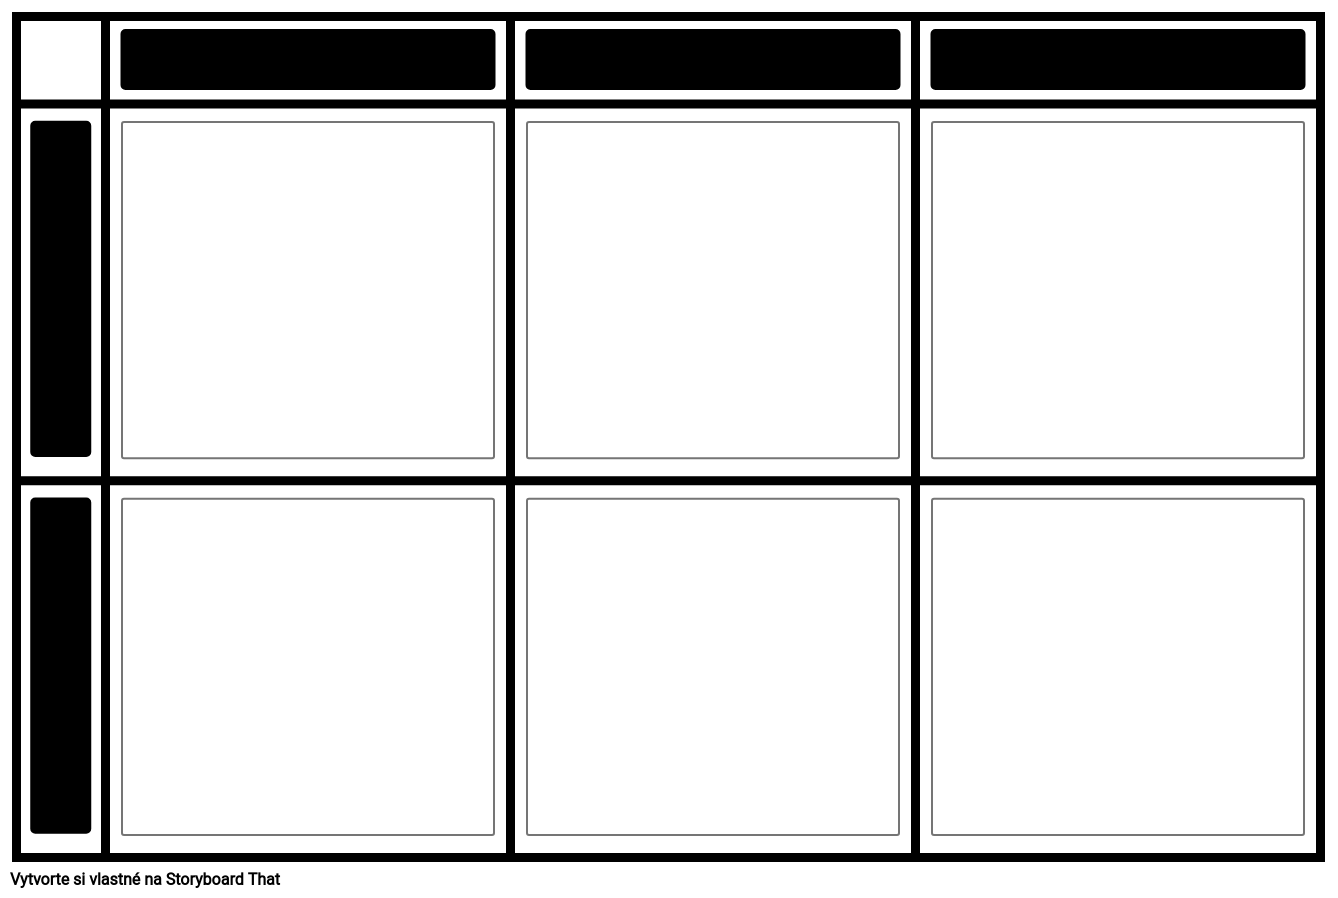 2x3 Graf bez popisu alebo hlavičky